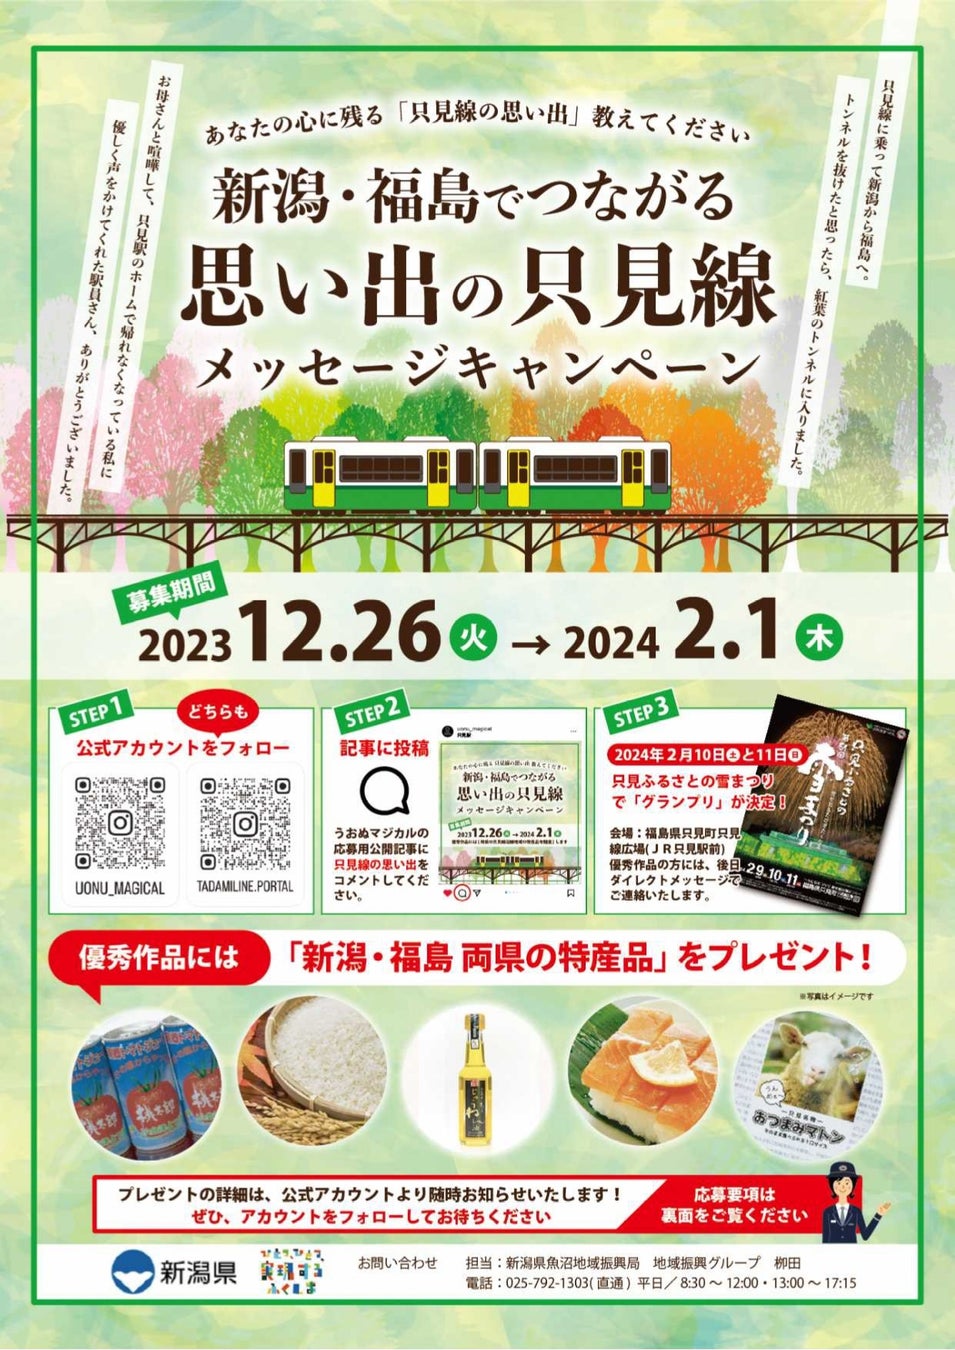 東海理化の無人レンタカーアプリ「Uqey」、福岡県の天神地下街にてキャラバンイベントを開催